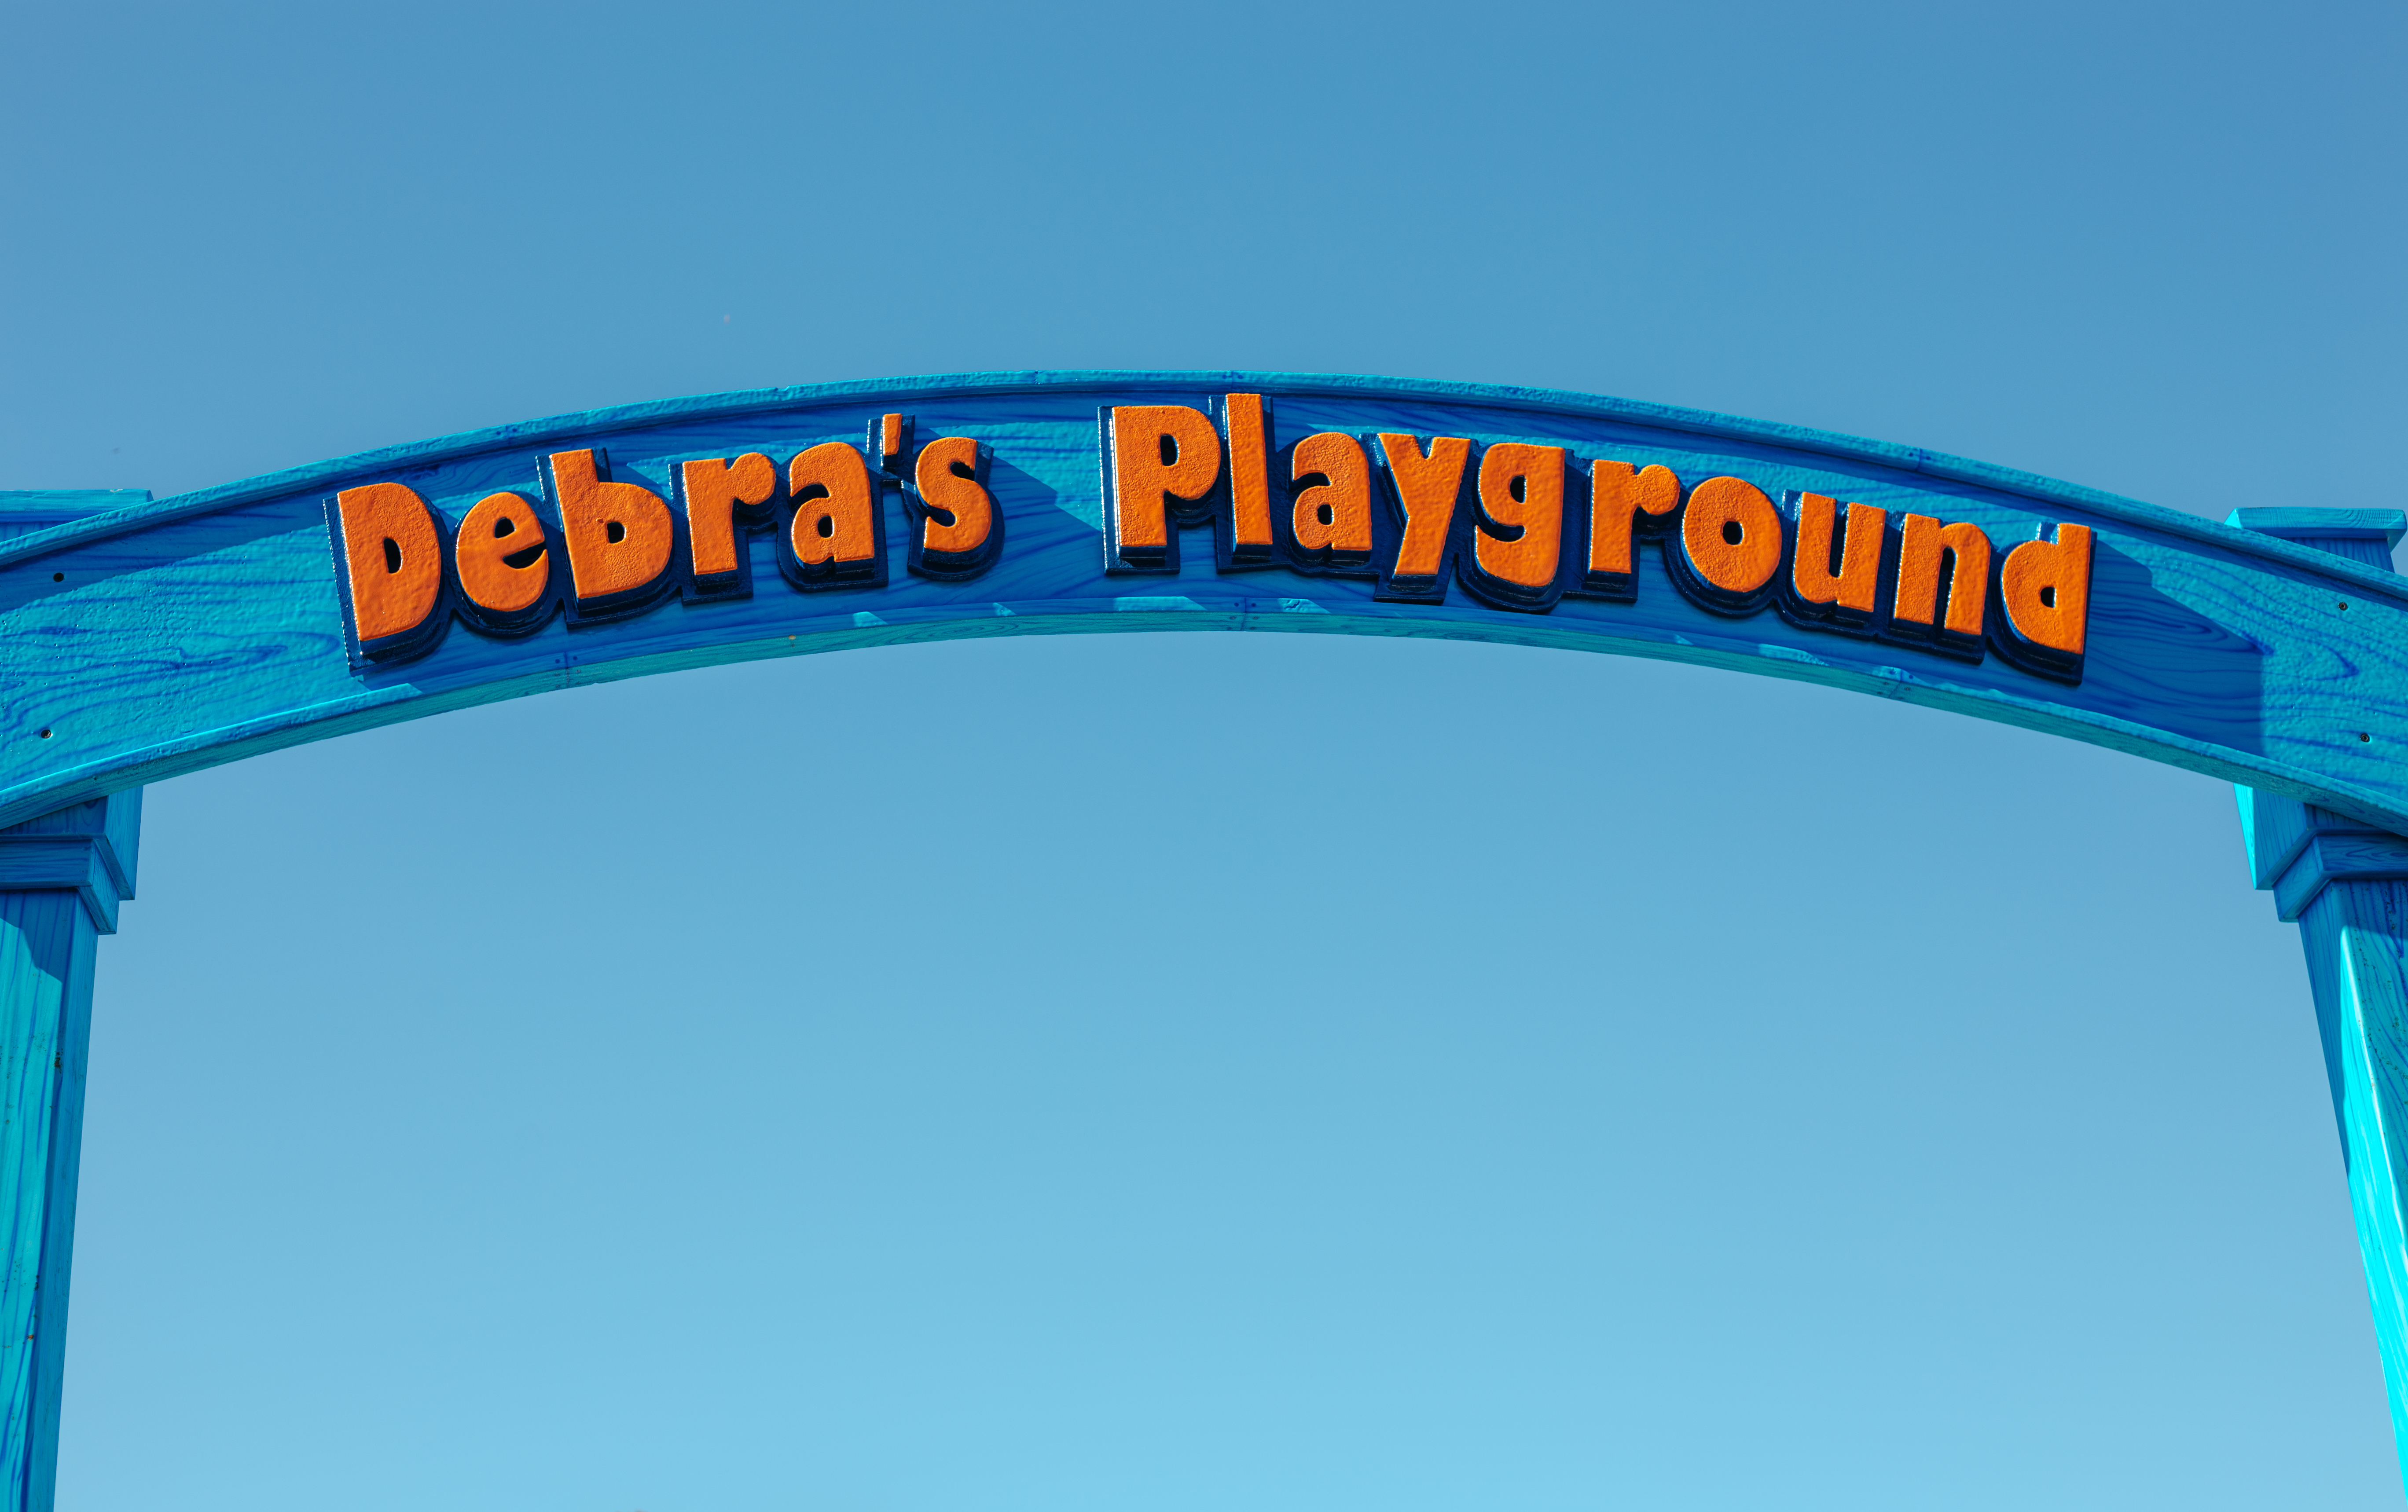 Debra's Playground sign